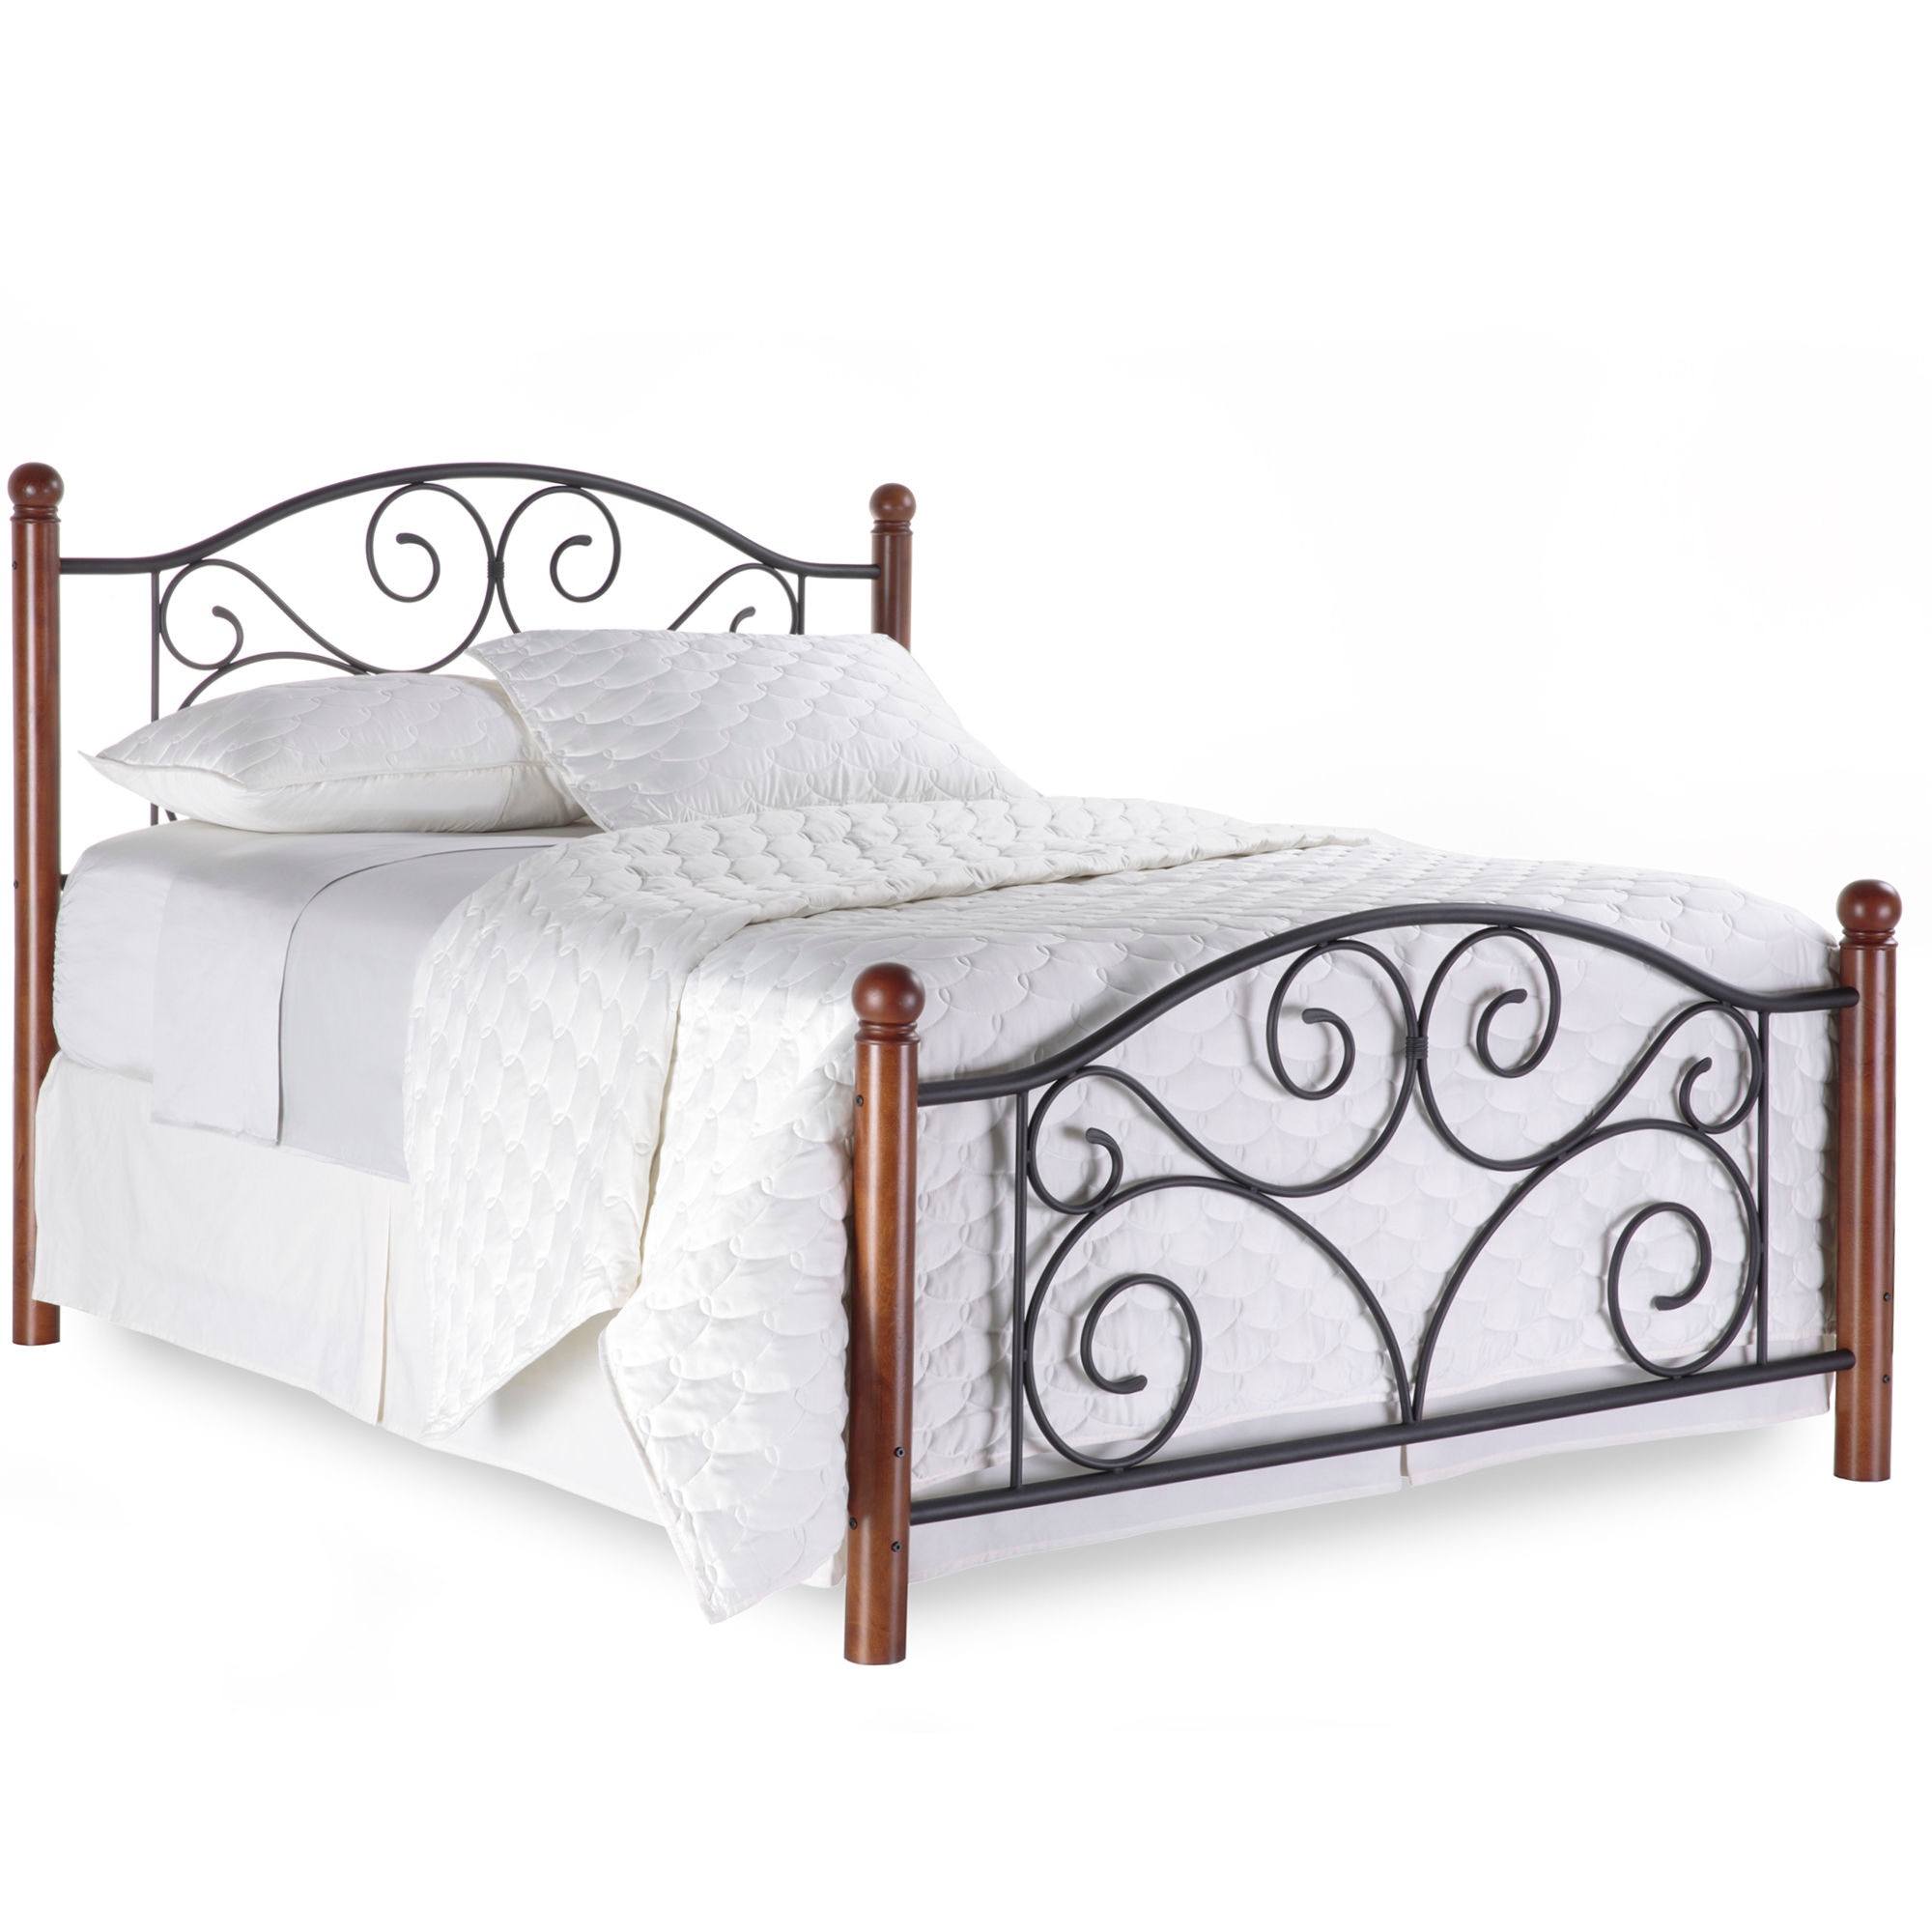 Озон полуторка. Queen King Bed Size железная кровать. Кровать металлическая Грация к191.01. 1 Металлическая кровать полутораспальная МТ-6124. Кровать железная кованная полуторка икеа.